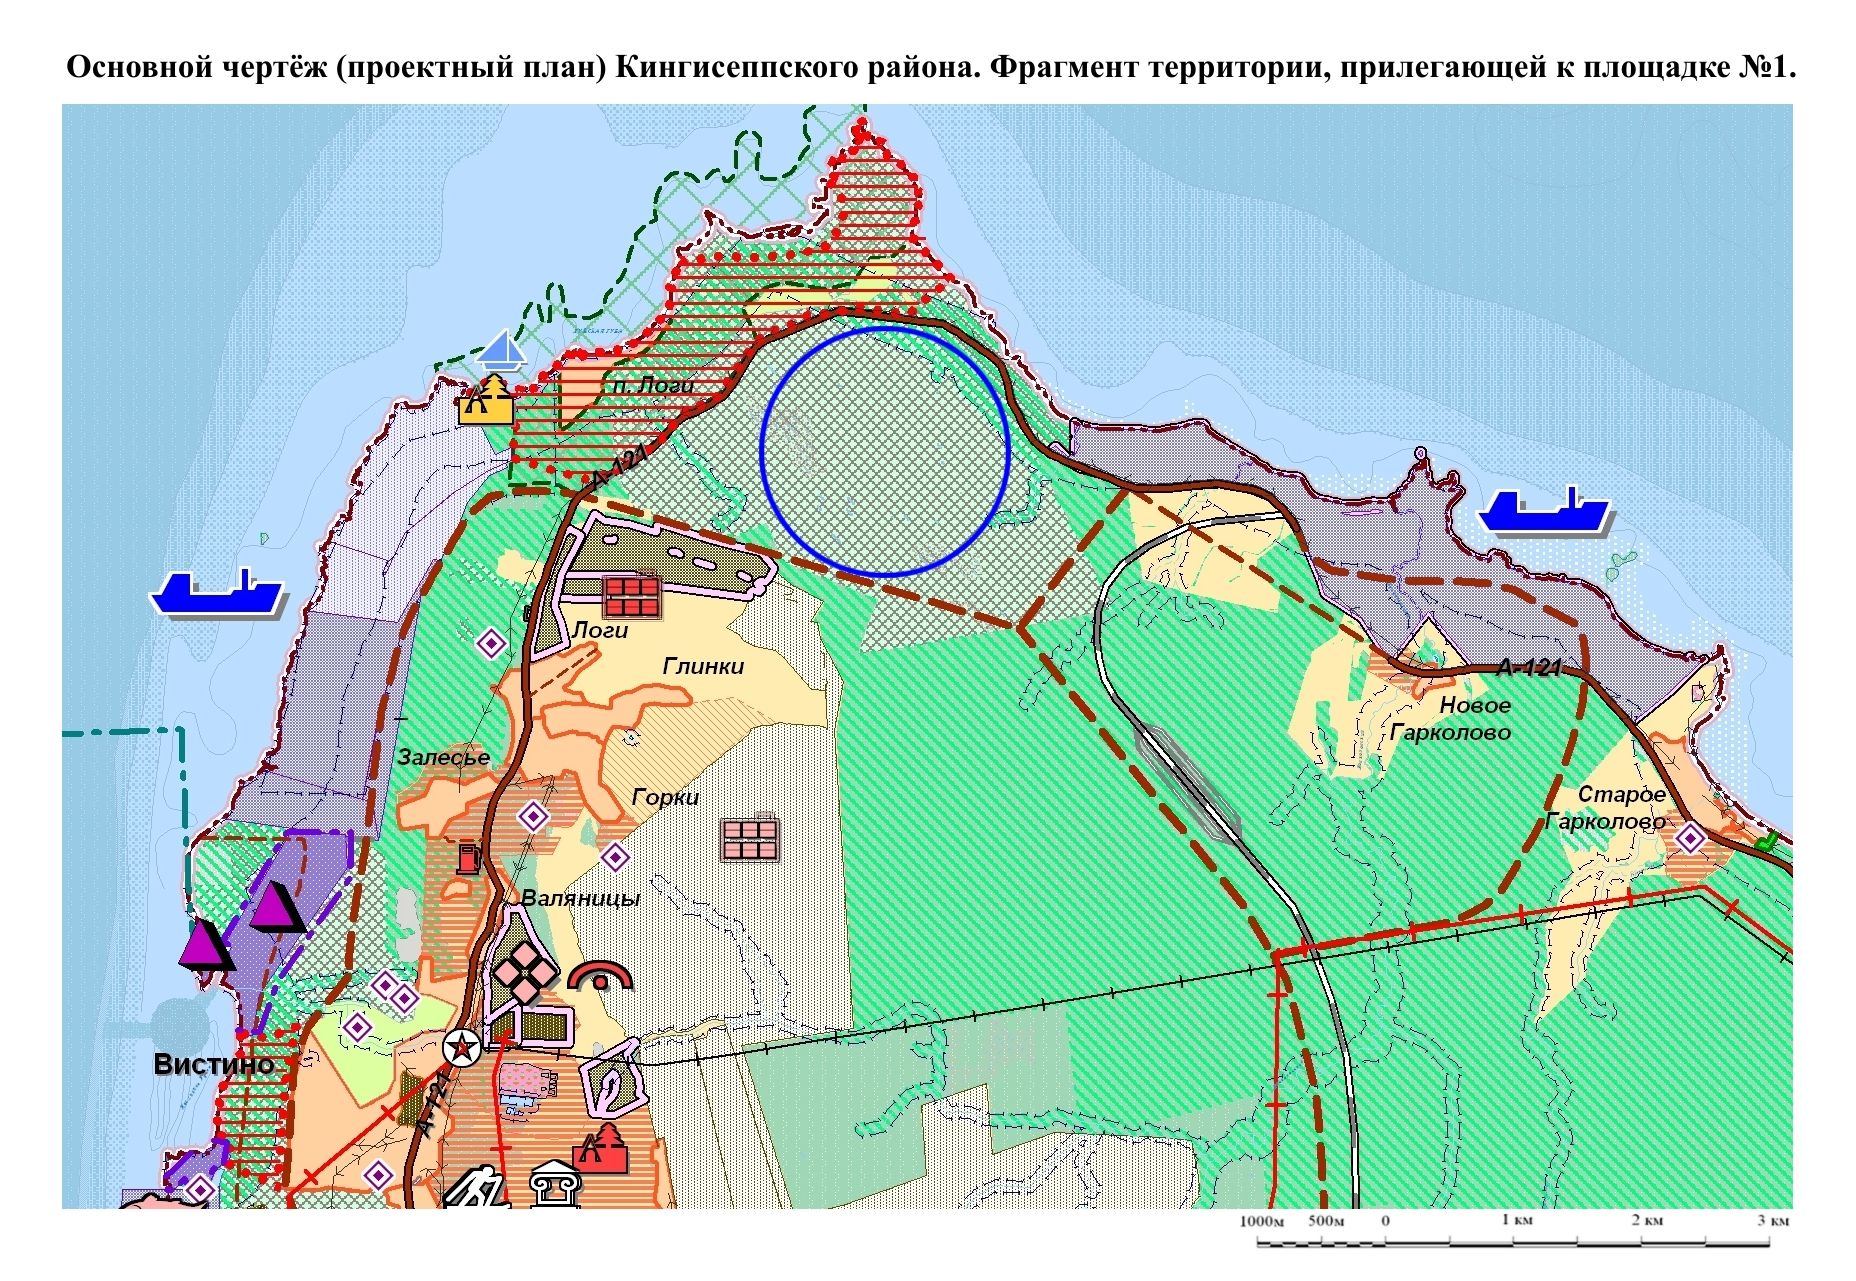 Проект исследования территории Кингисеппского муниципального района Ленинградской области с целью выбора площадок для размещения береговых сооружений трубопровода «Северный поток - NEXT»